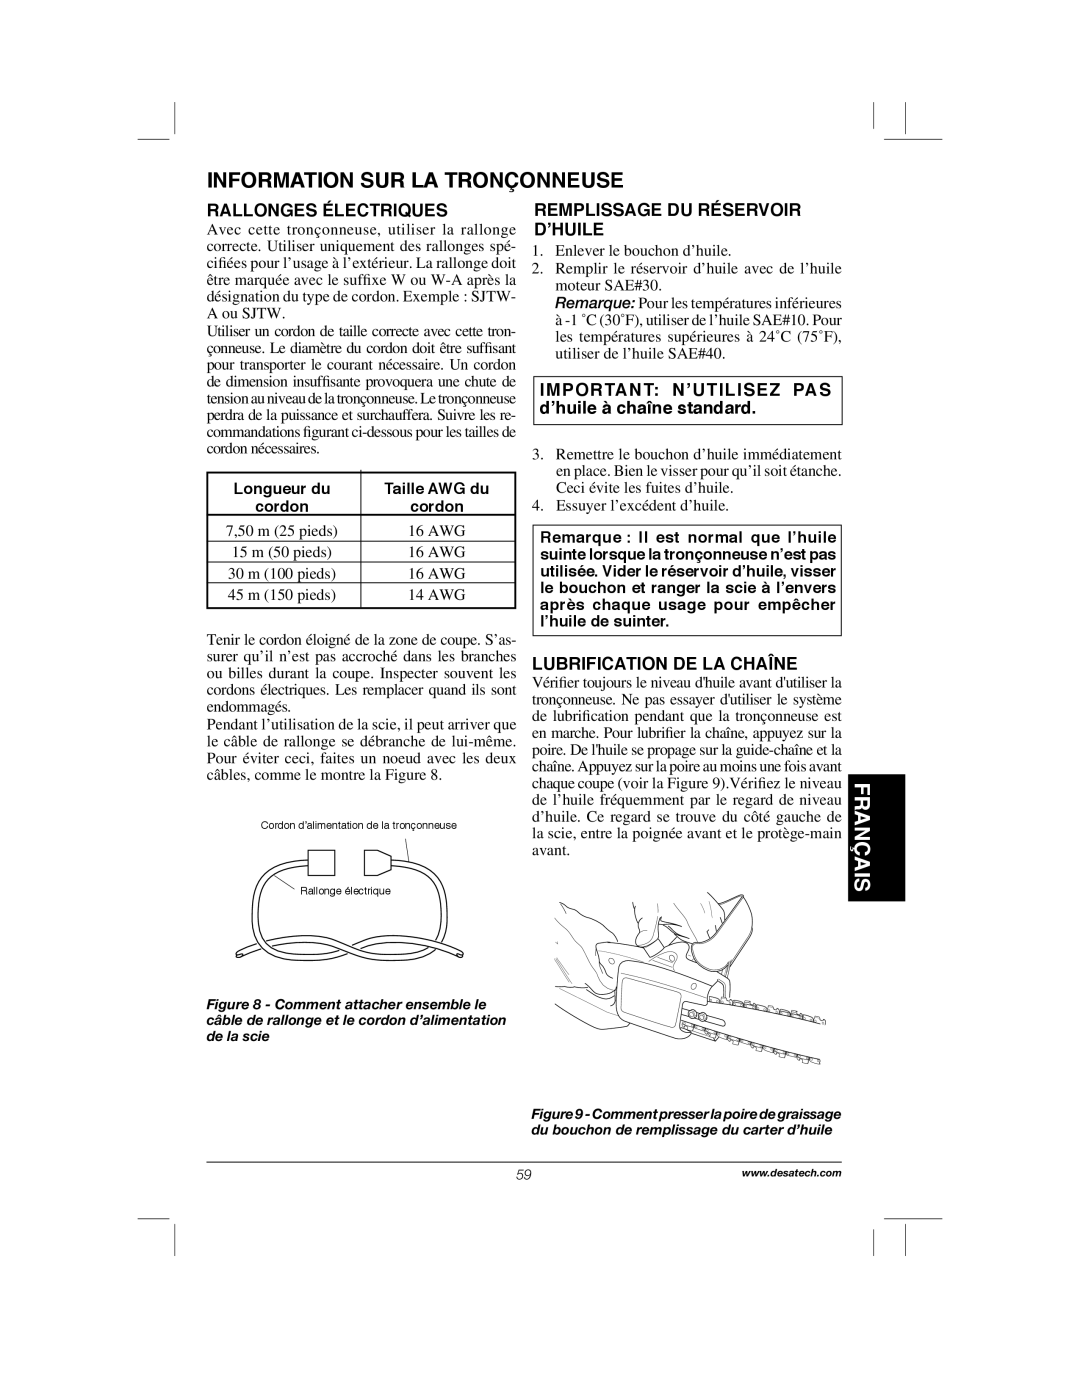 Remington Power Tools 104317, PS1510A manual Français, Information Sur La Tronçonneuse, Rallonges Électriques 